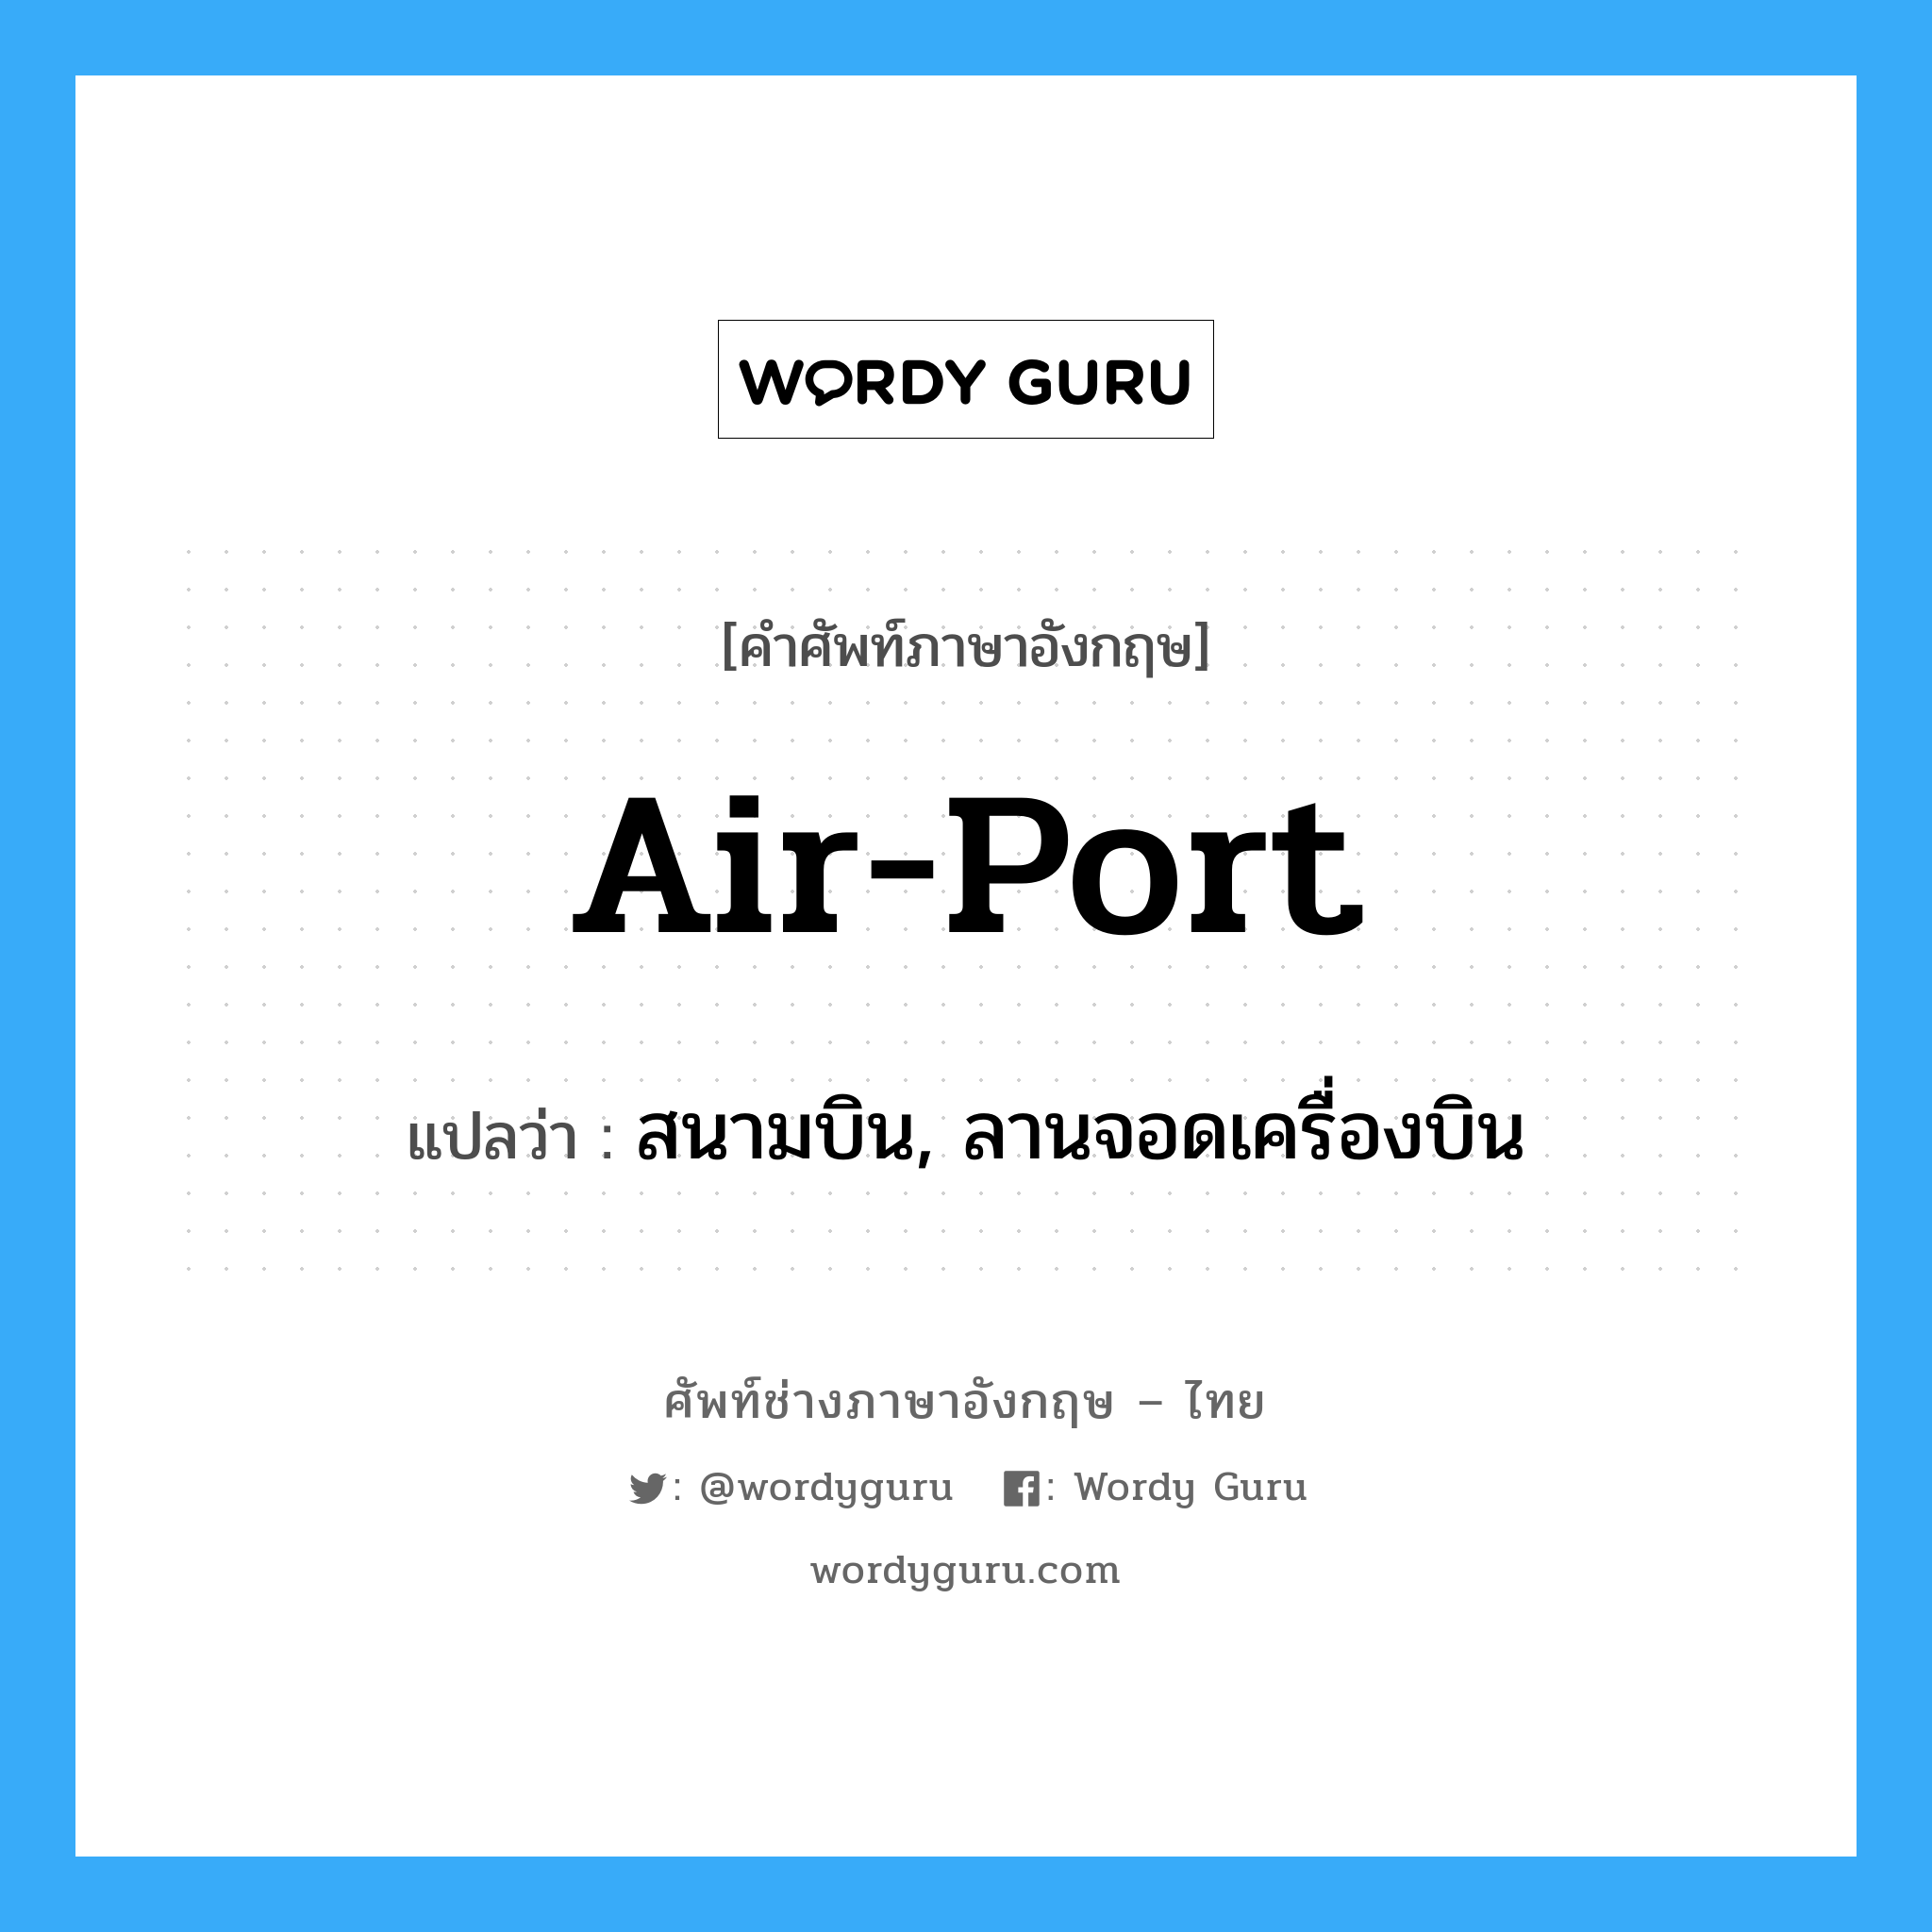 air-port แปลว่า?, คำศัพท์ช่างภาษาอังกฤษ - ไทย air-port คำศัพท์ภาษาอังกฤษ air-port แปลว่า สนามบิน, ลานจอดเครื่องบิน